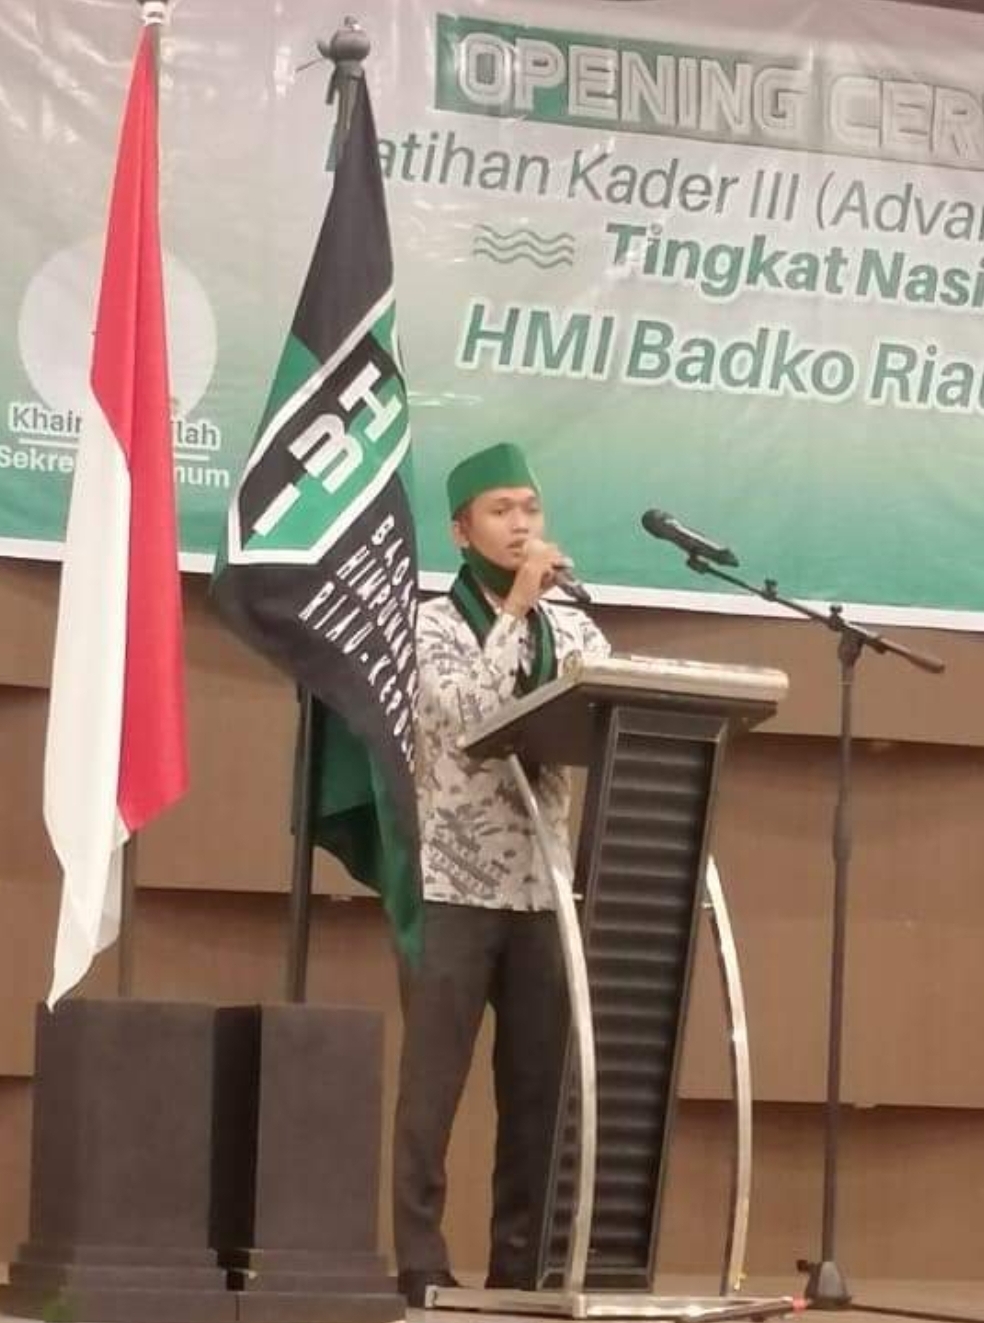 Dukung Revisi UU ITE, Badko HMI Riau Kepri: Selama ini UU ITE Menjadi Momok Menakutkani